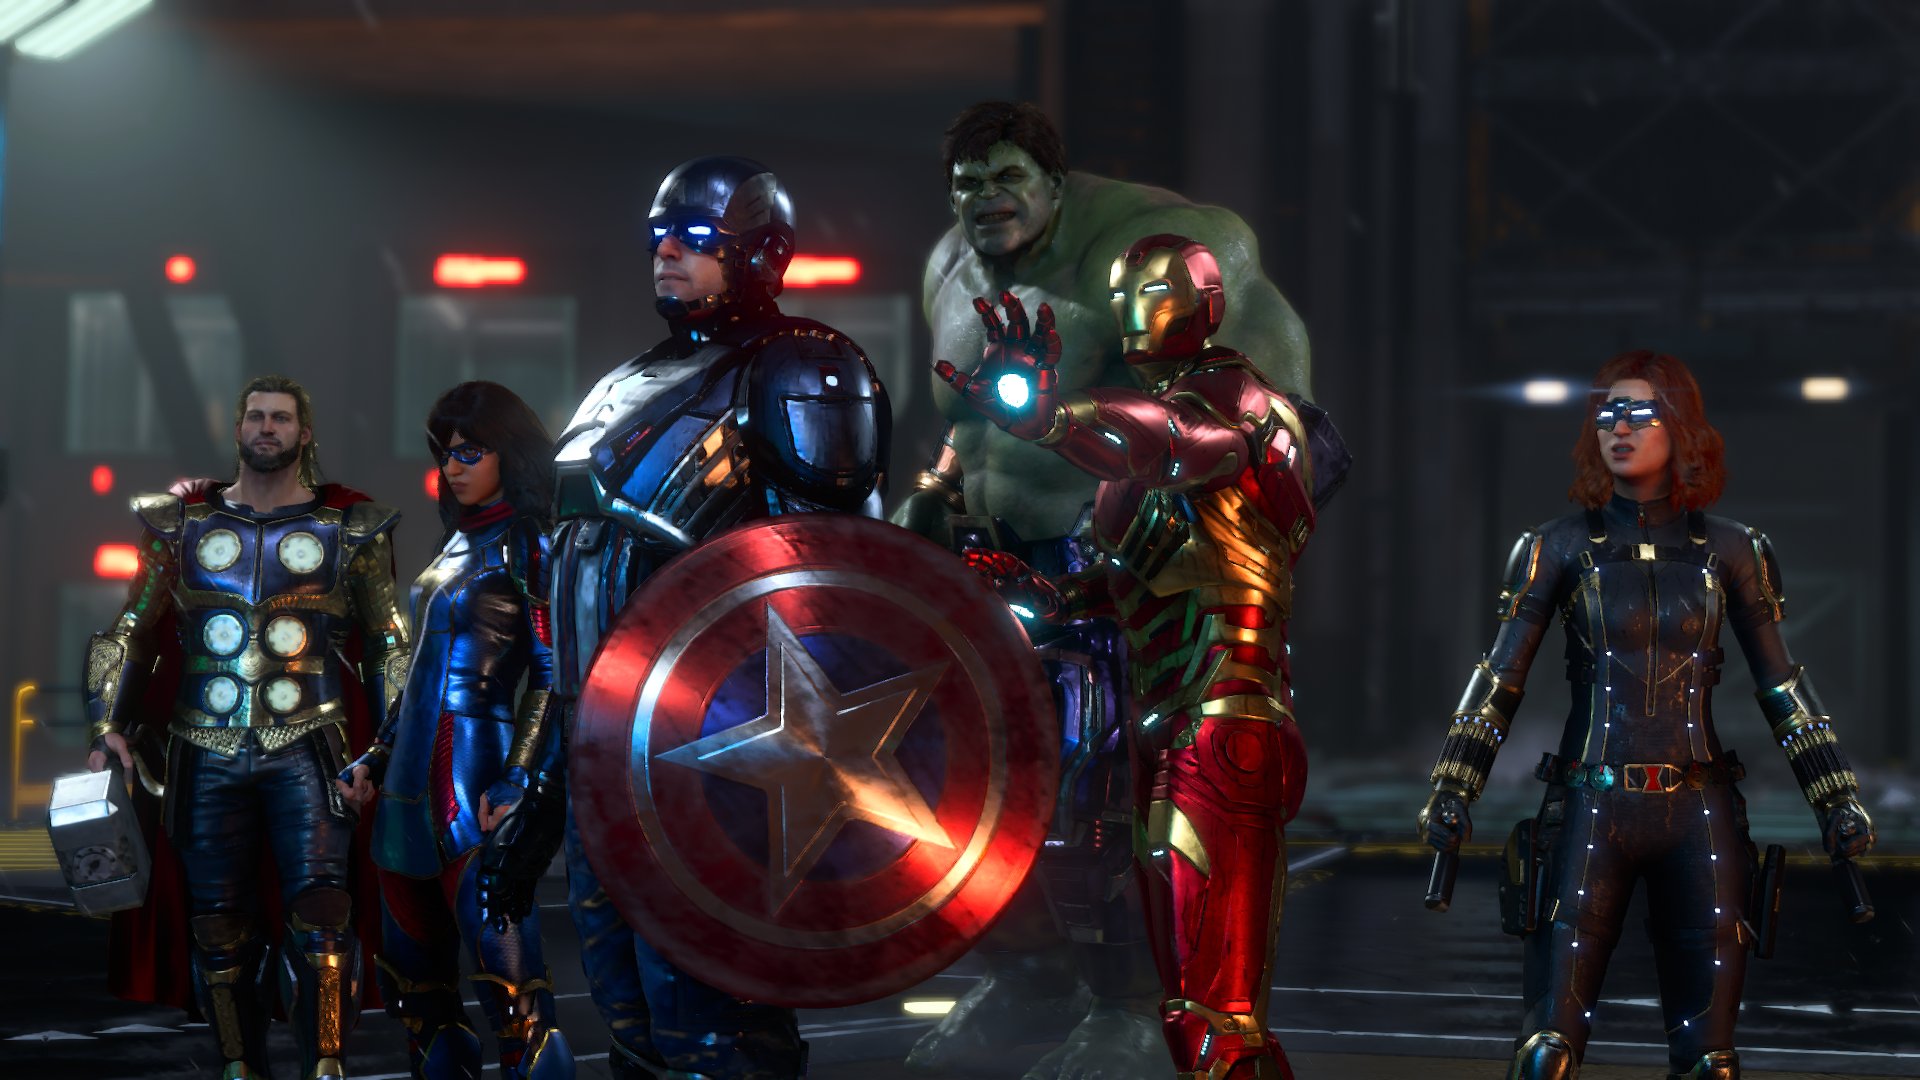 Marvel's Avengers Review